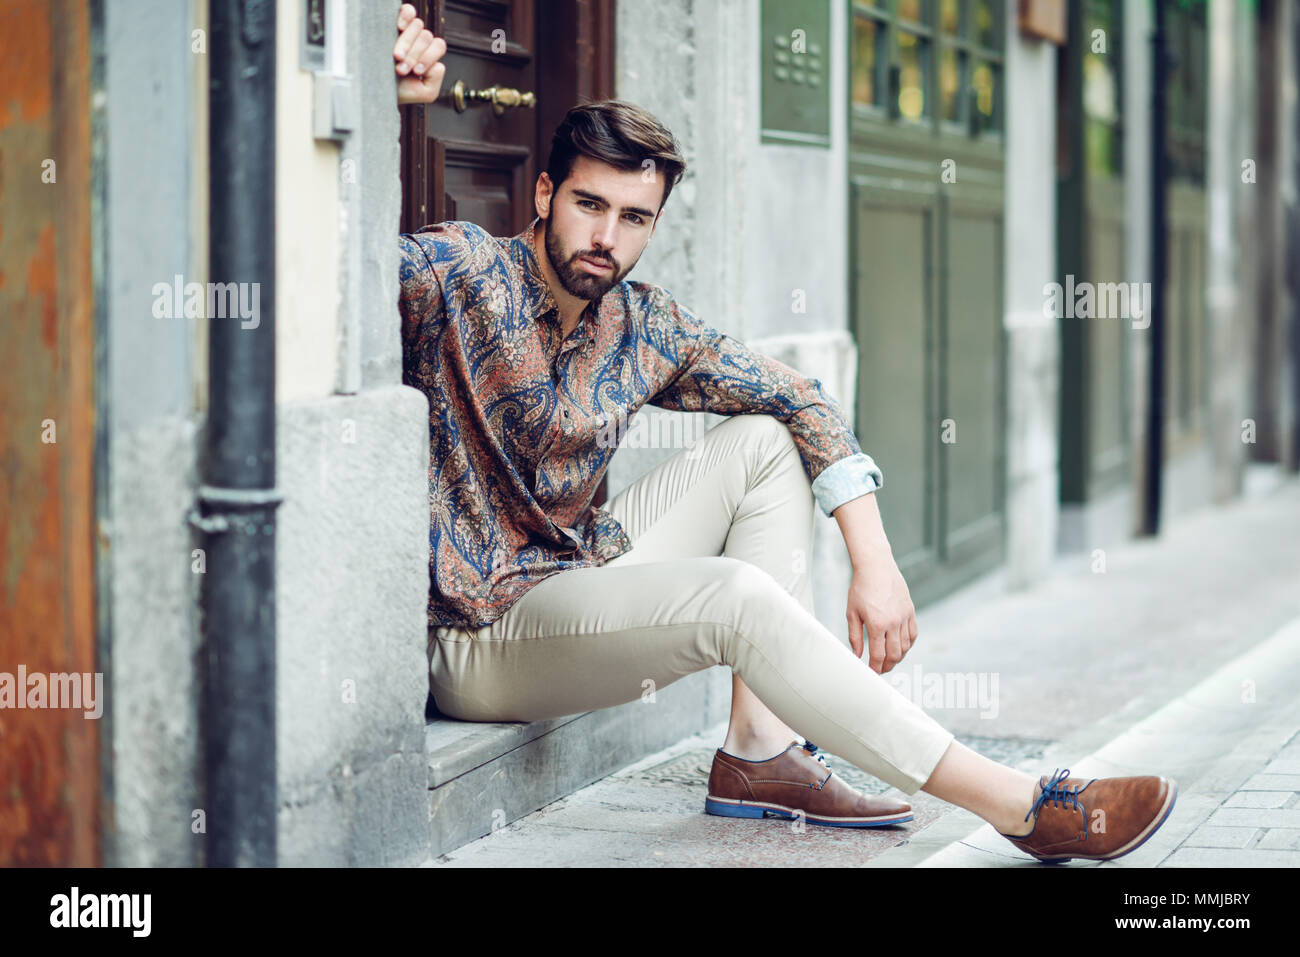 Joven Hombre Barbado, modelo de moda urbana, sentados en un paso vistiendo ropa  casual. Chico con barba y peinado moderno mirando a otro lado de la calle  Fotografía de stock - Alamy